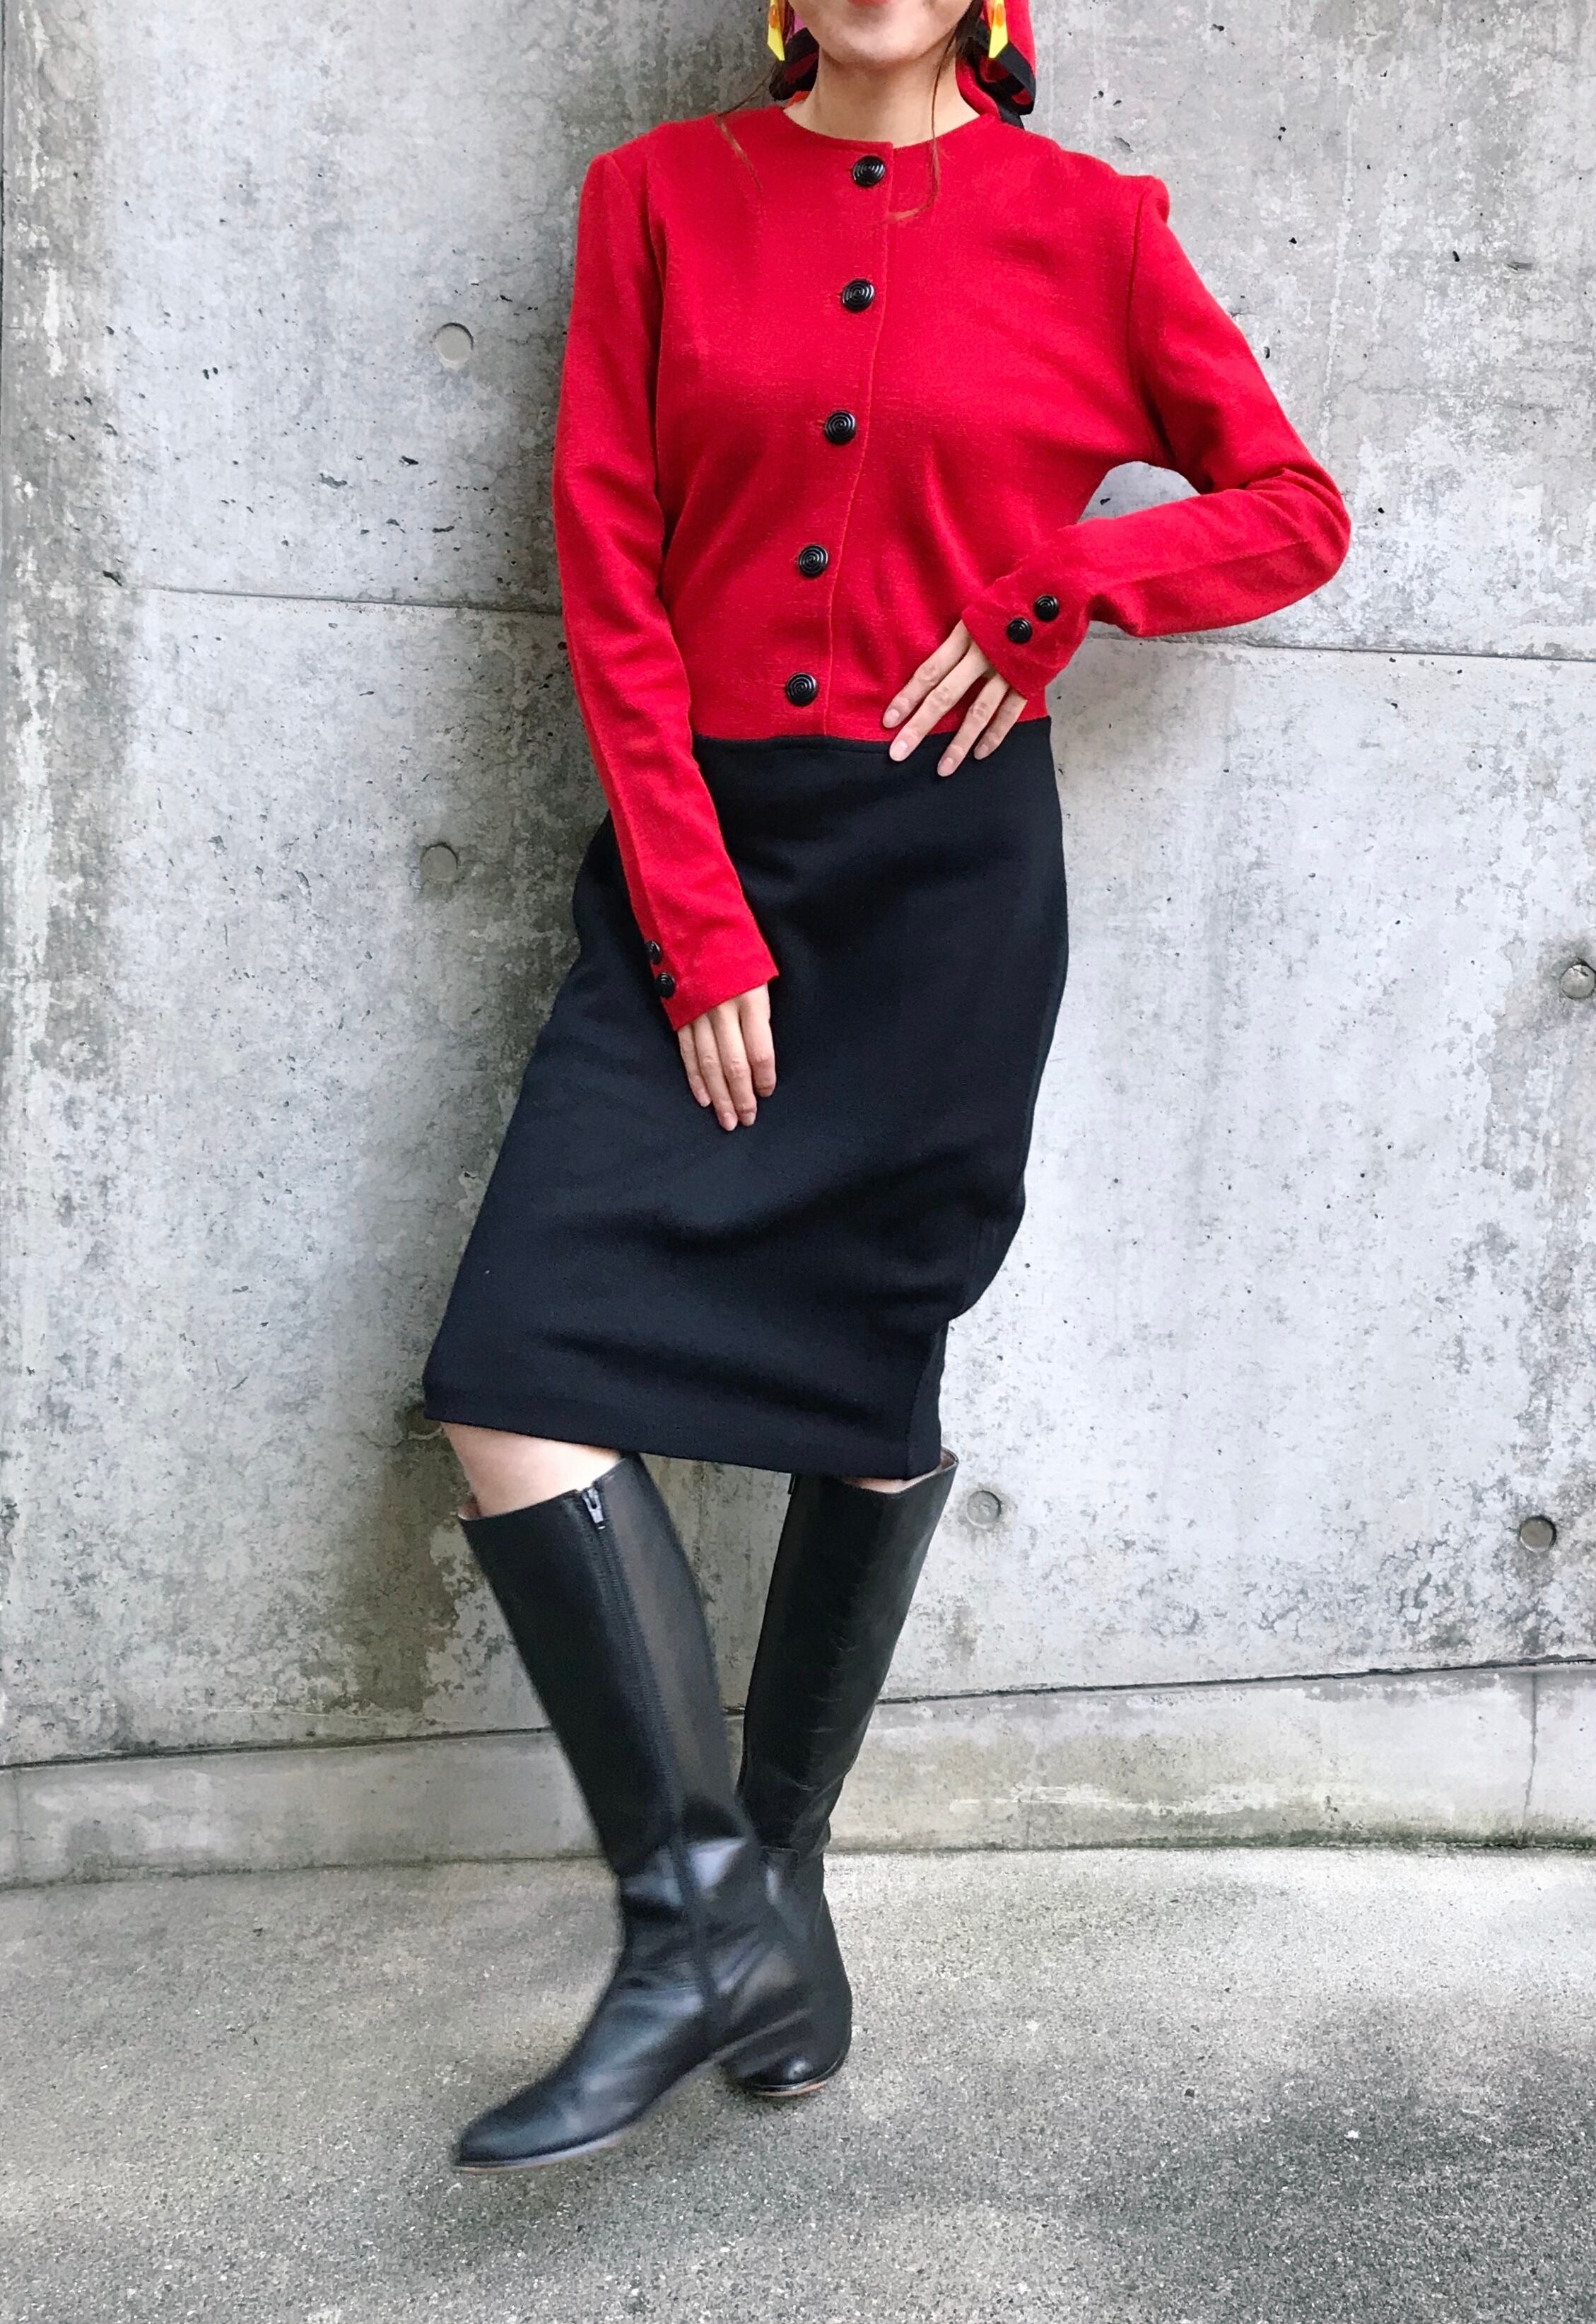 Vintage red × black bi-color dress (ヴィンテージ バイカラー  レッド × ブラック ニット ワンピース )